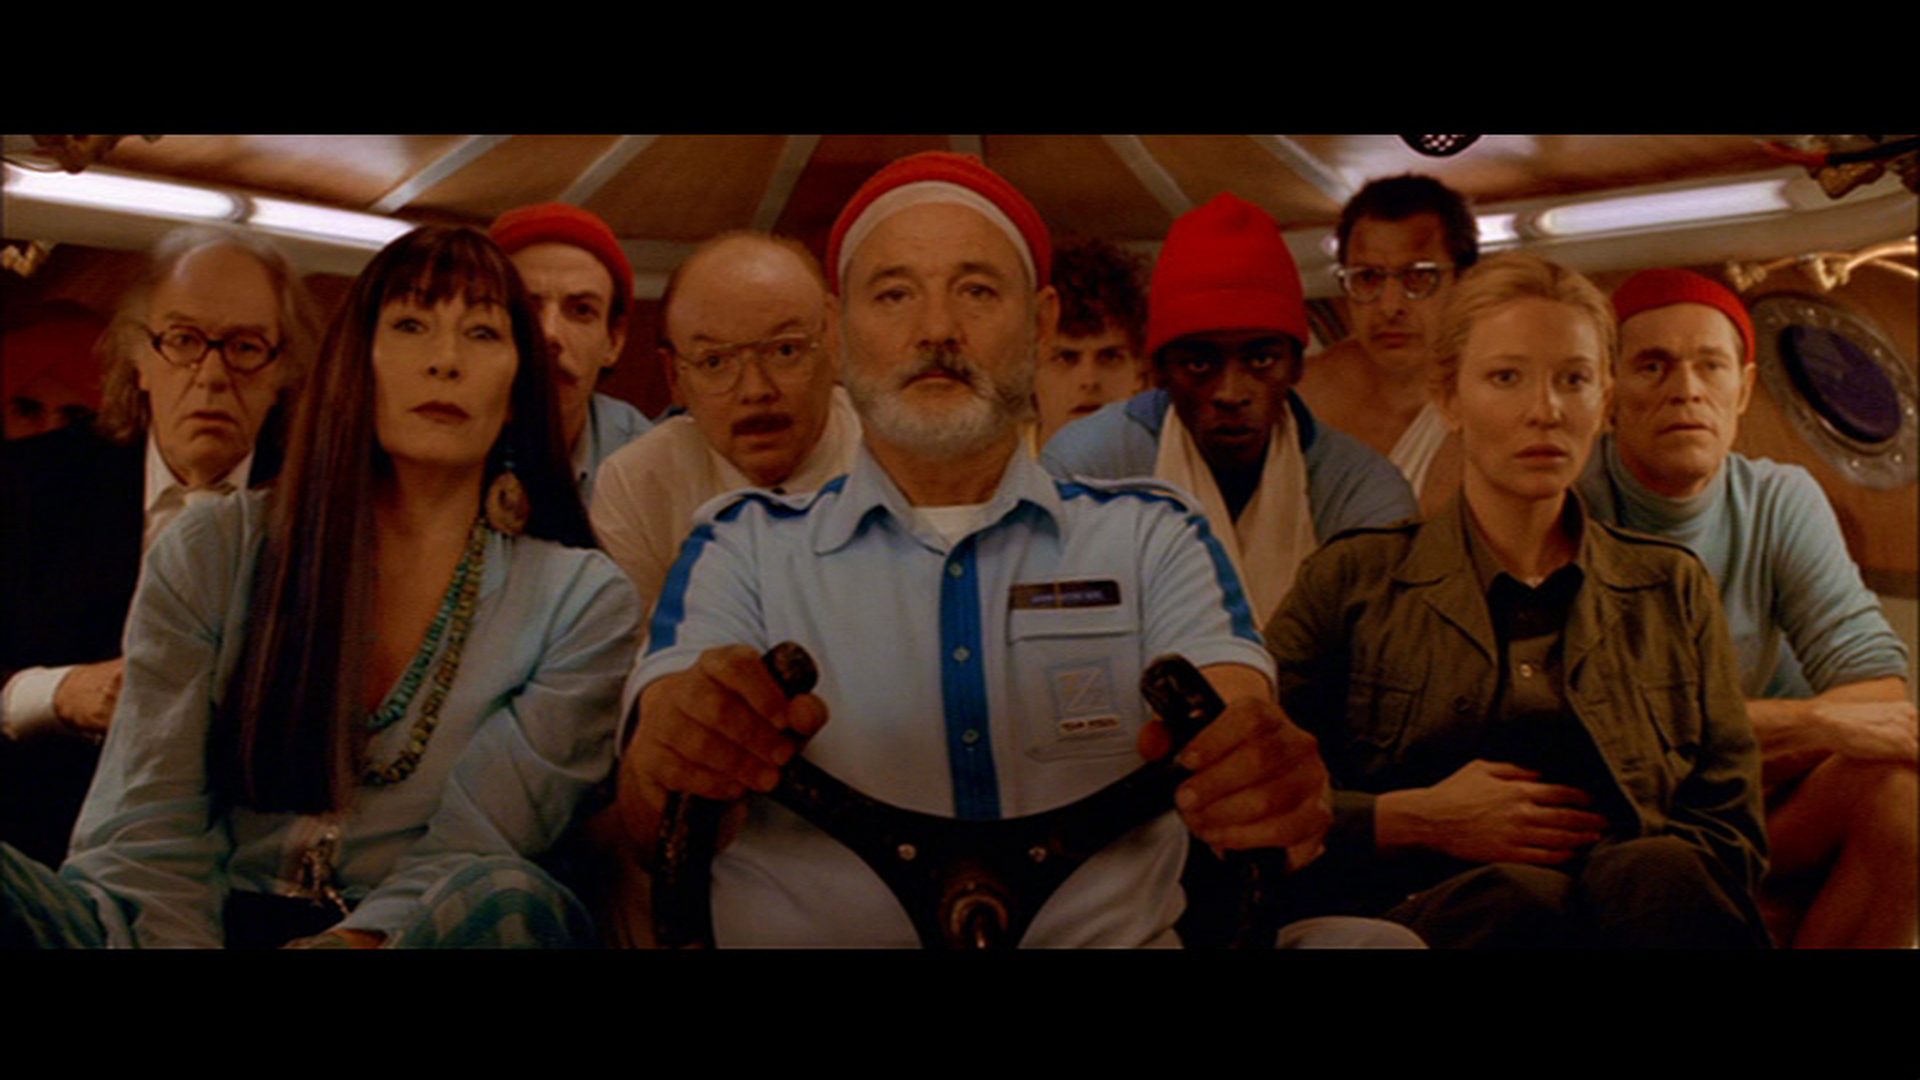 Frontalaufnahme von zehn Insassen eines Mini-U-Bootes mit konzentriert-gespannten Blicken, in der Mitte sitzt Bill Murray als Steve Zissou am Steuer, flankiert von Anjelica Huston und Cate Blanchett.